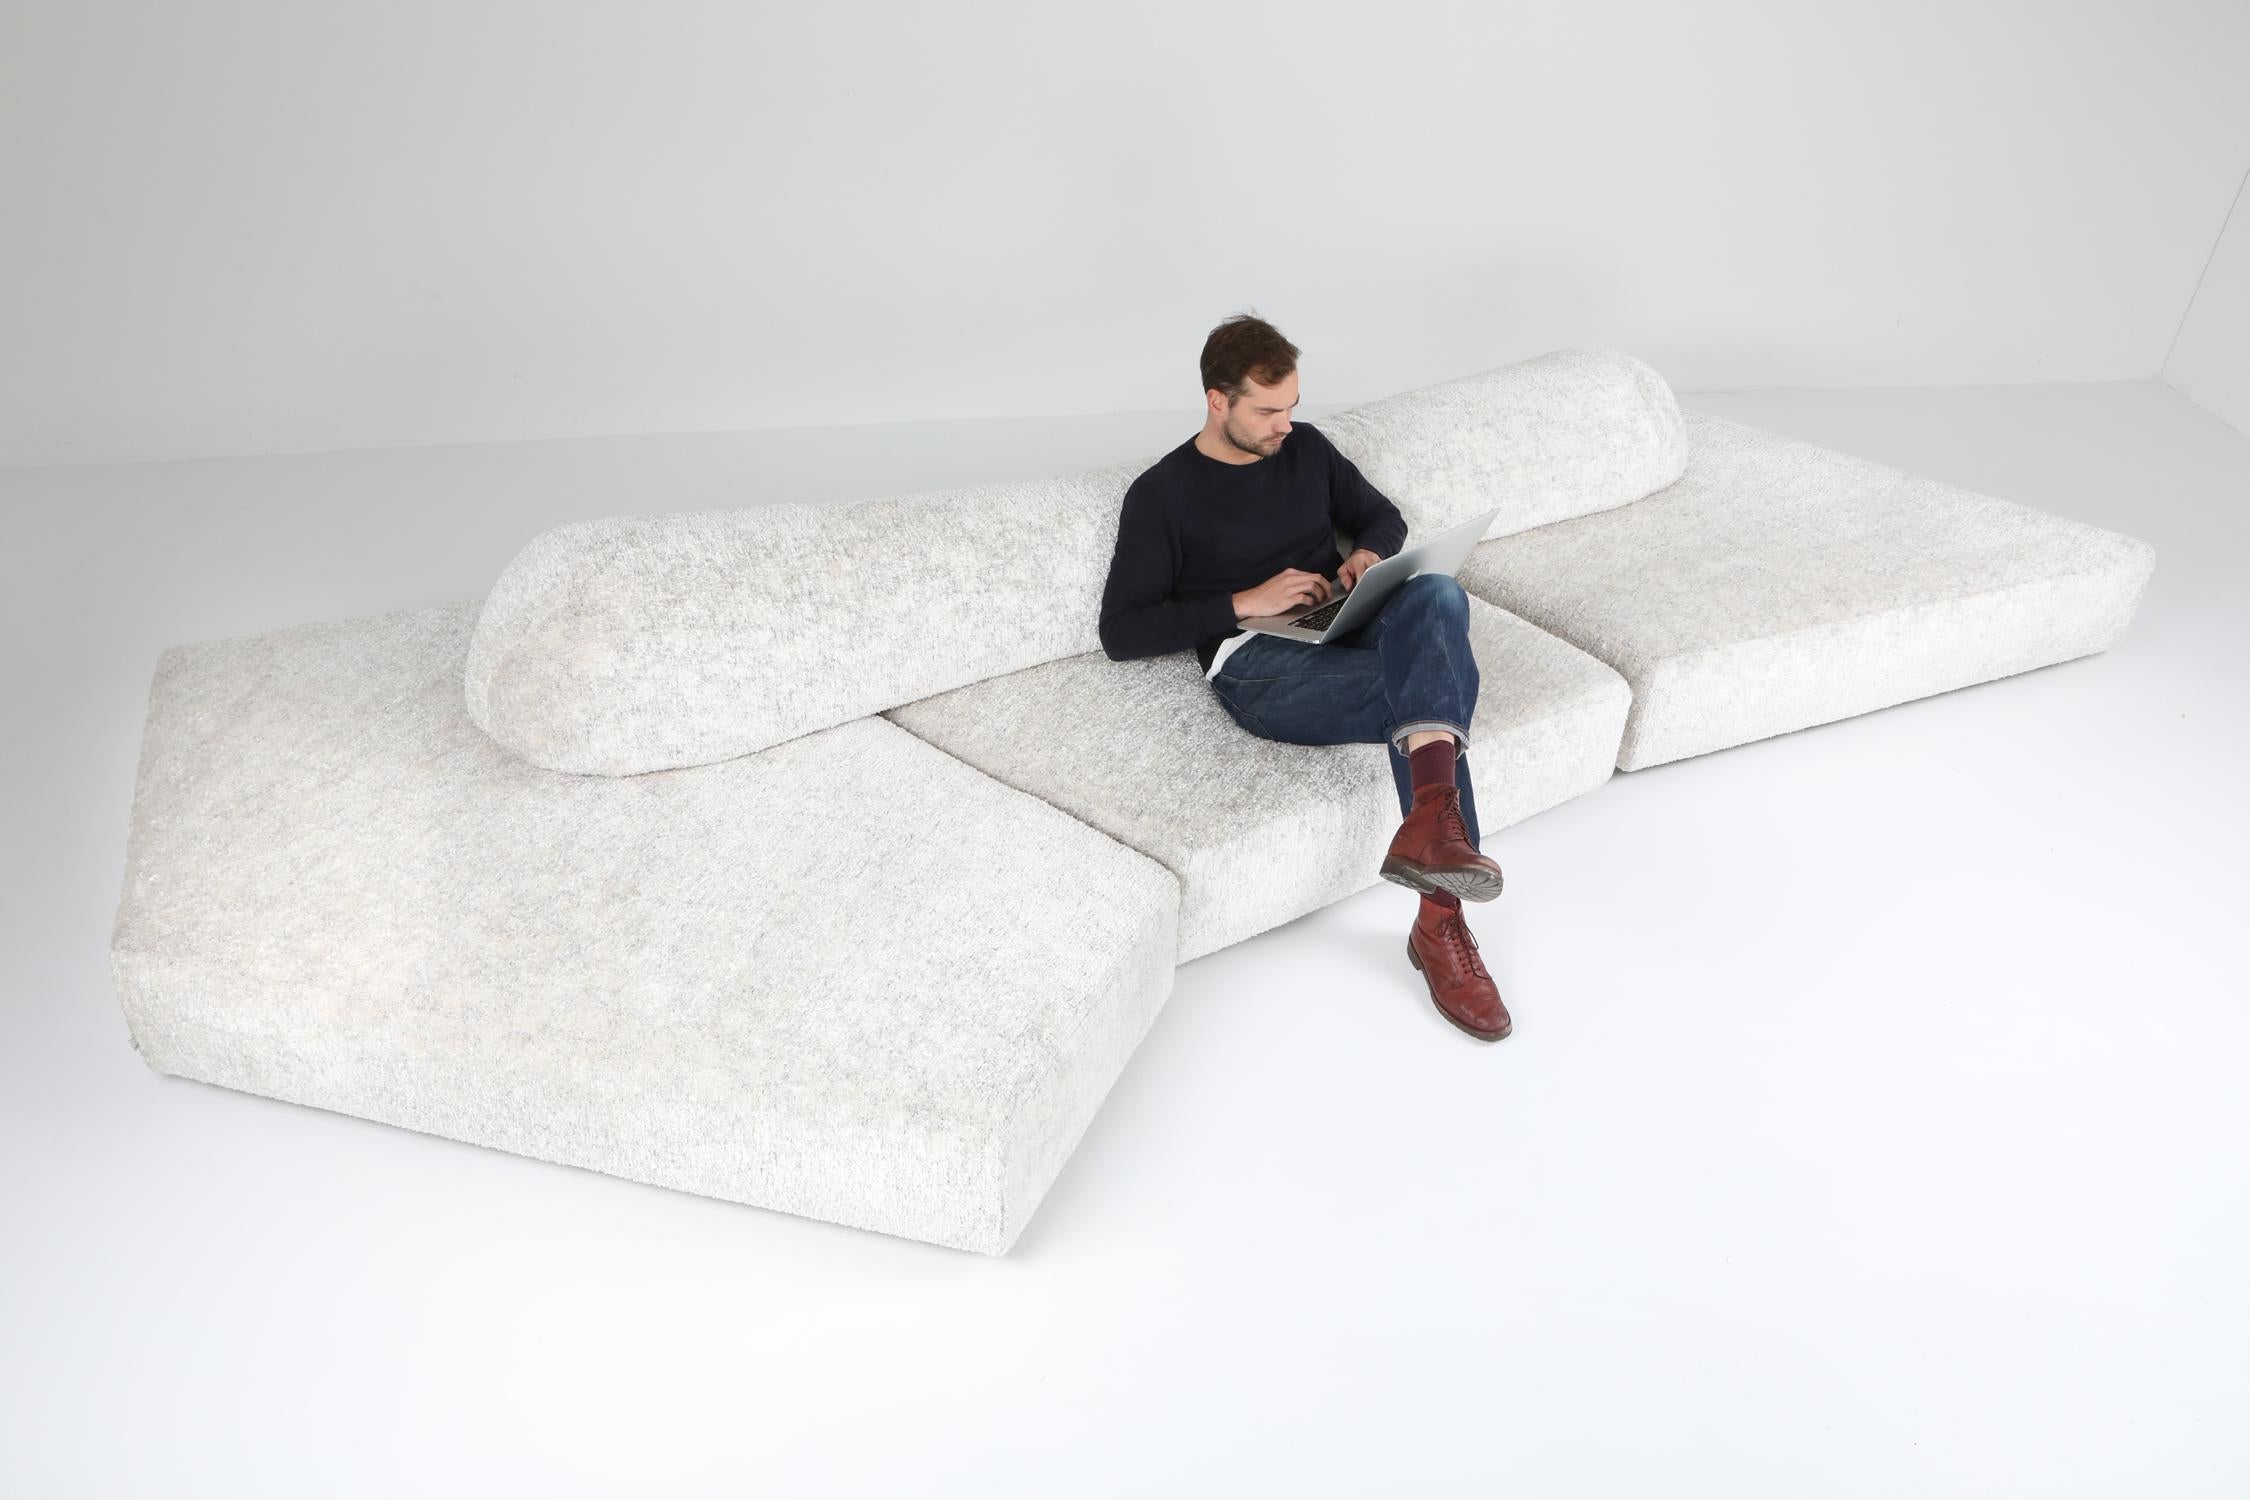 Foam Edra 'On the Rocks' sectional sofa by Francesco Binfare